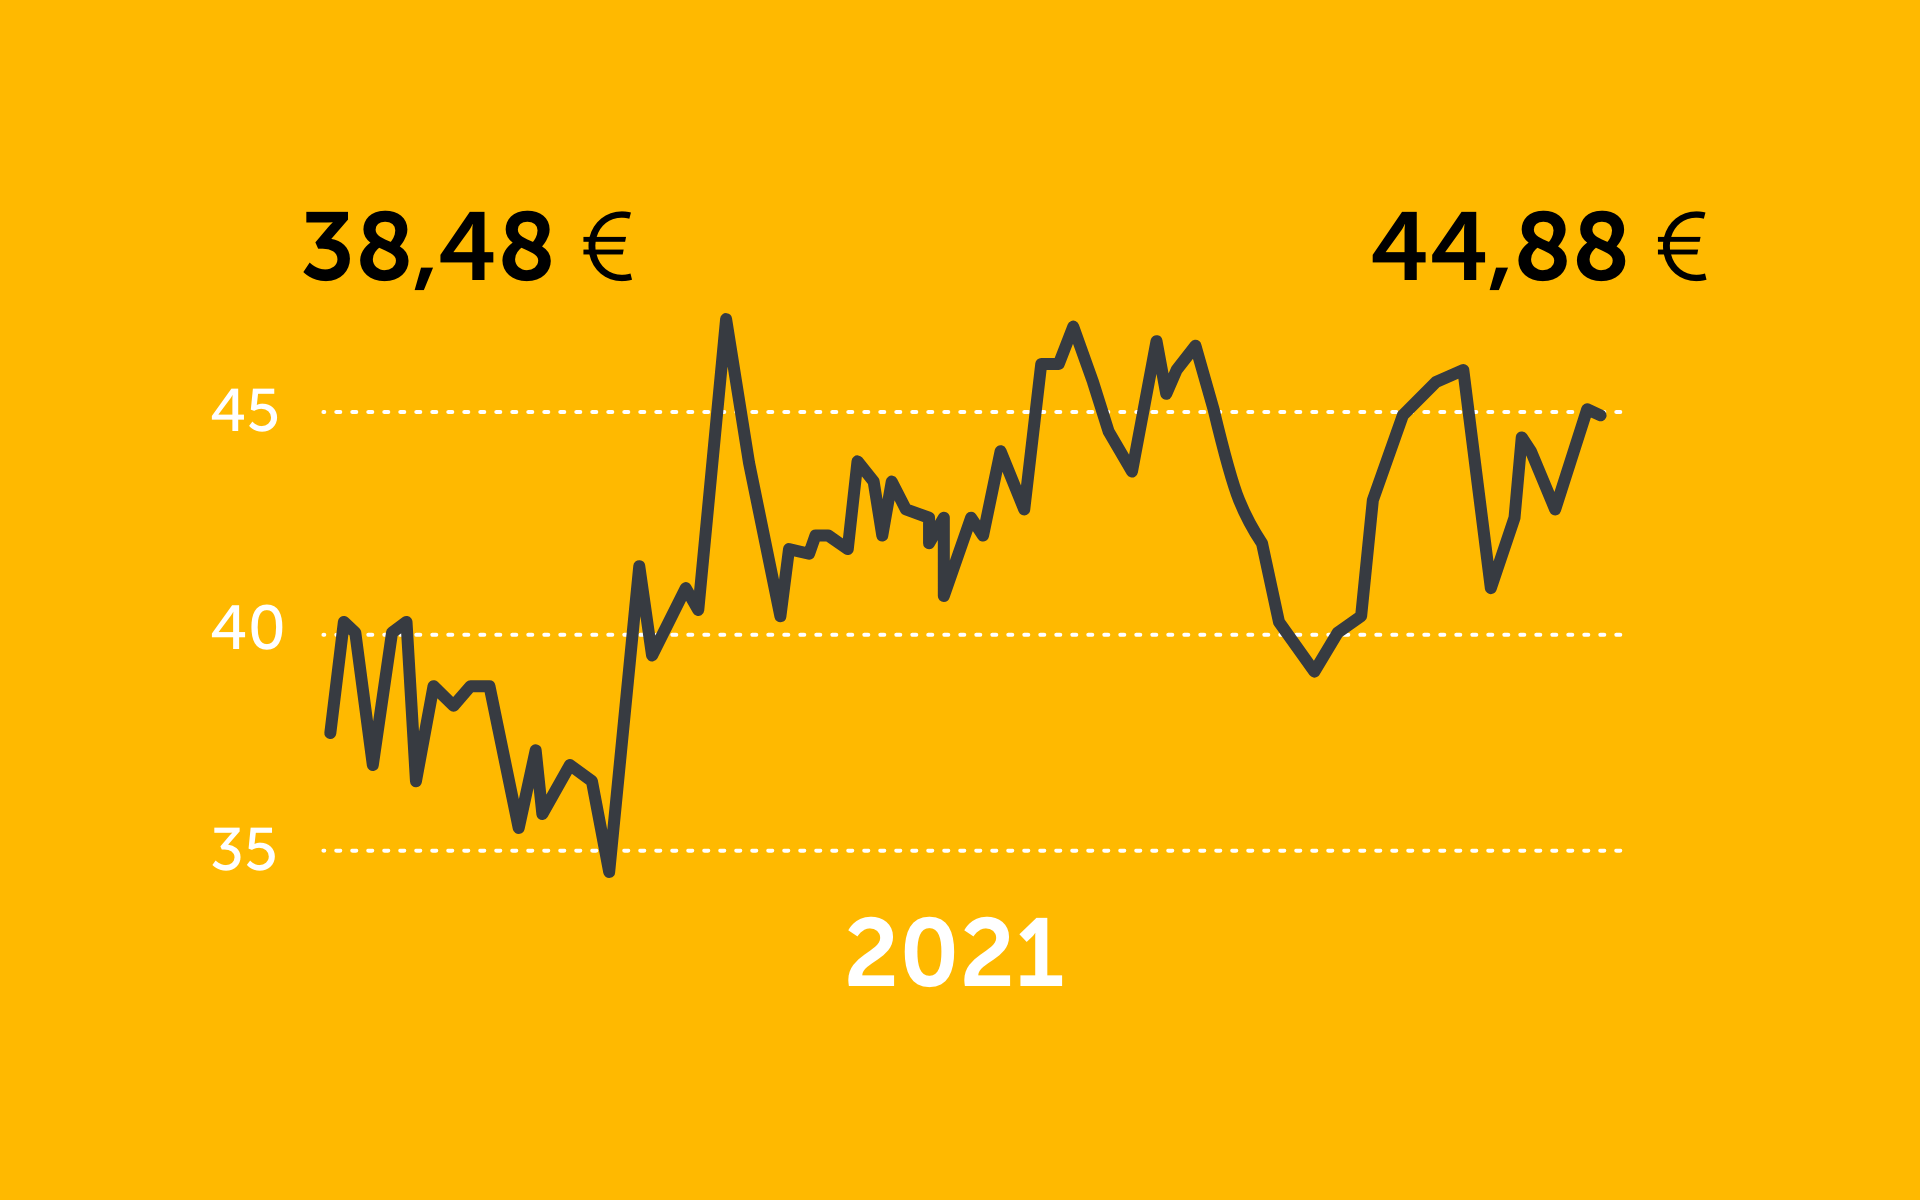 Darstellung des Kursverlaufs der Jungheinrich Aktie im Jahr 2021